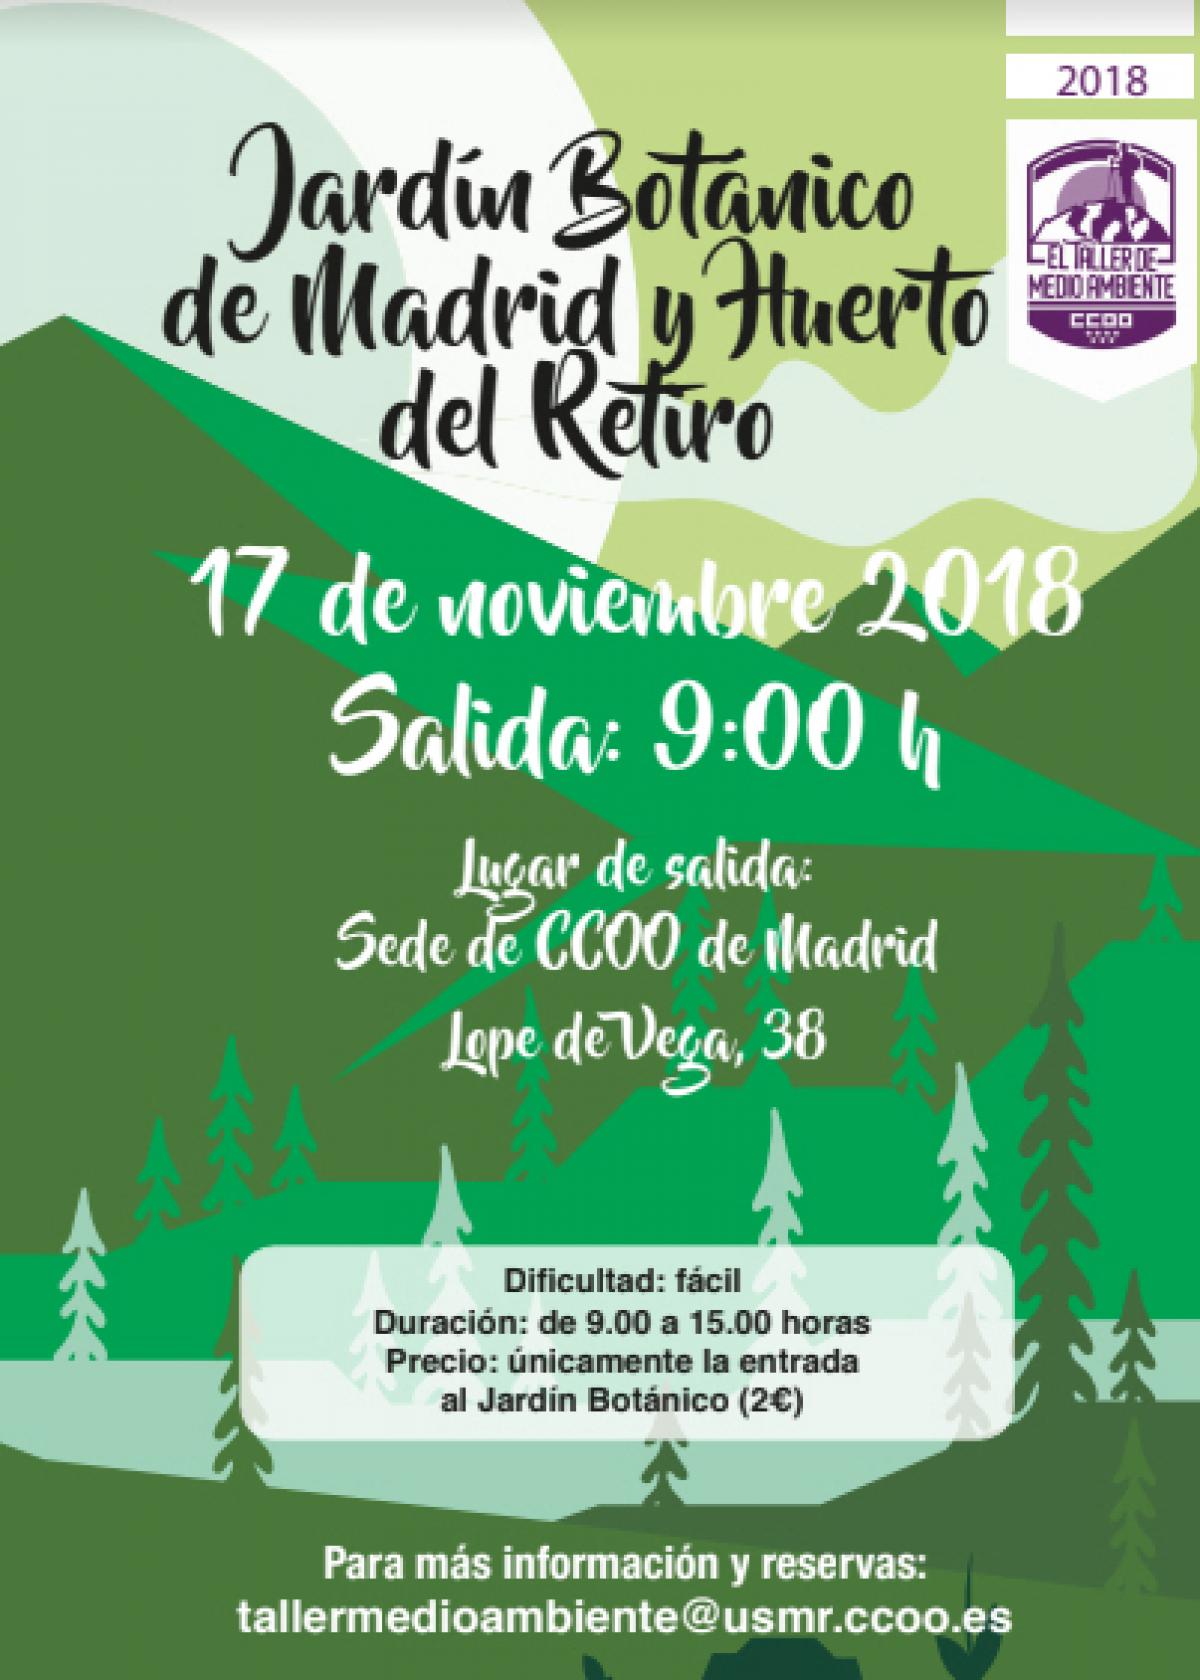 Taller de Medio Ambiente de CCOO: Jardín Botánico de Madrid y Huerto del Retiro